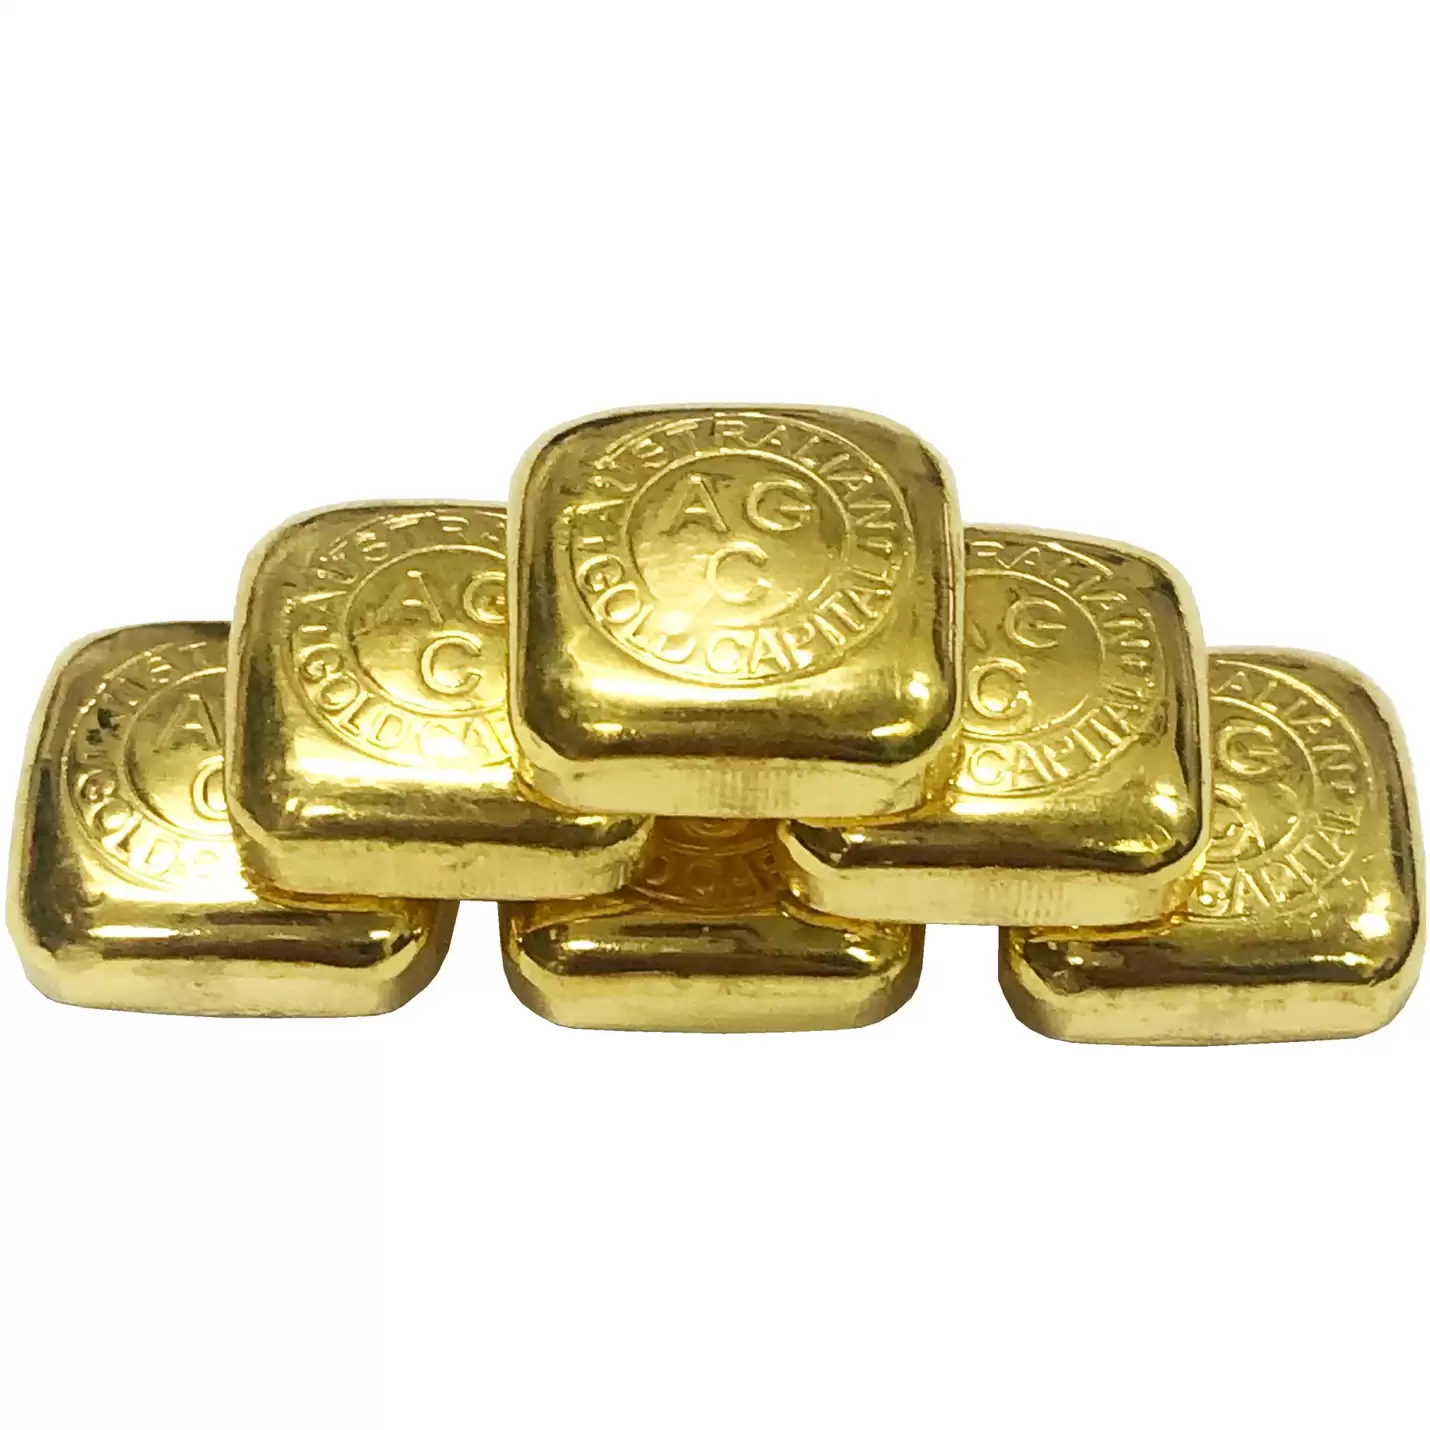 Gold Bullion Bars Pool Allocated Gold Bullion Share : 1kg